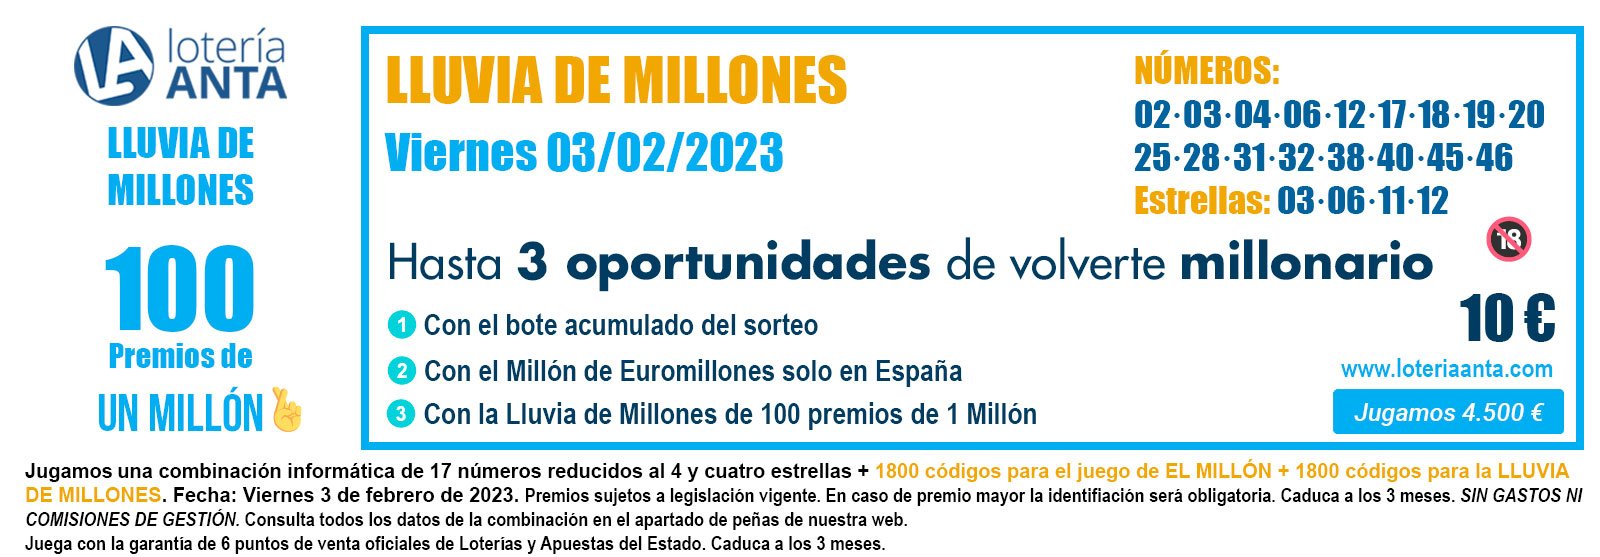 Llega la primera lluvia de millones de Euromillones de 2023 - Loteria Anta